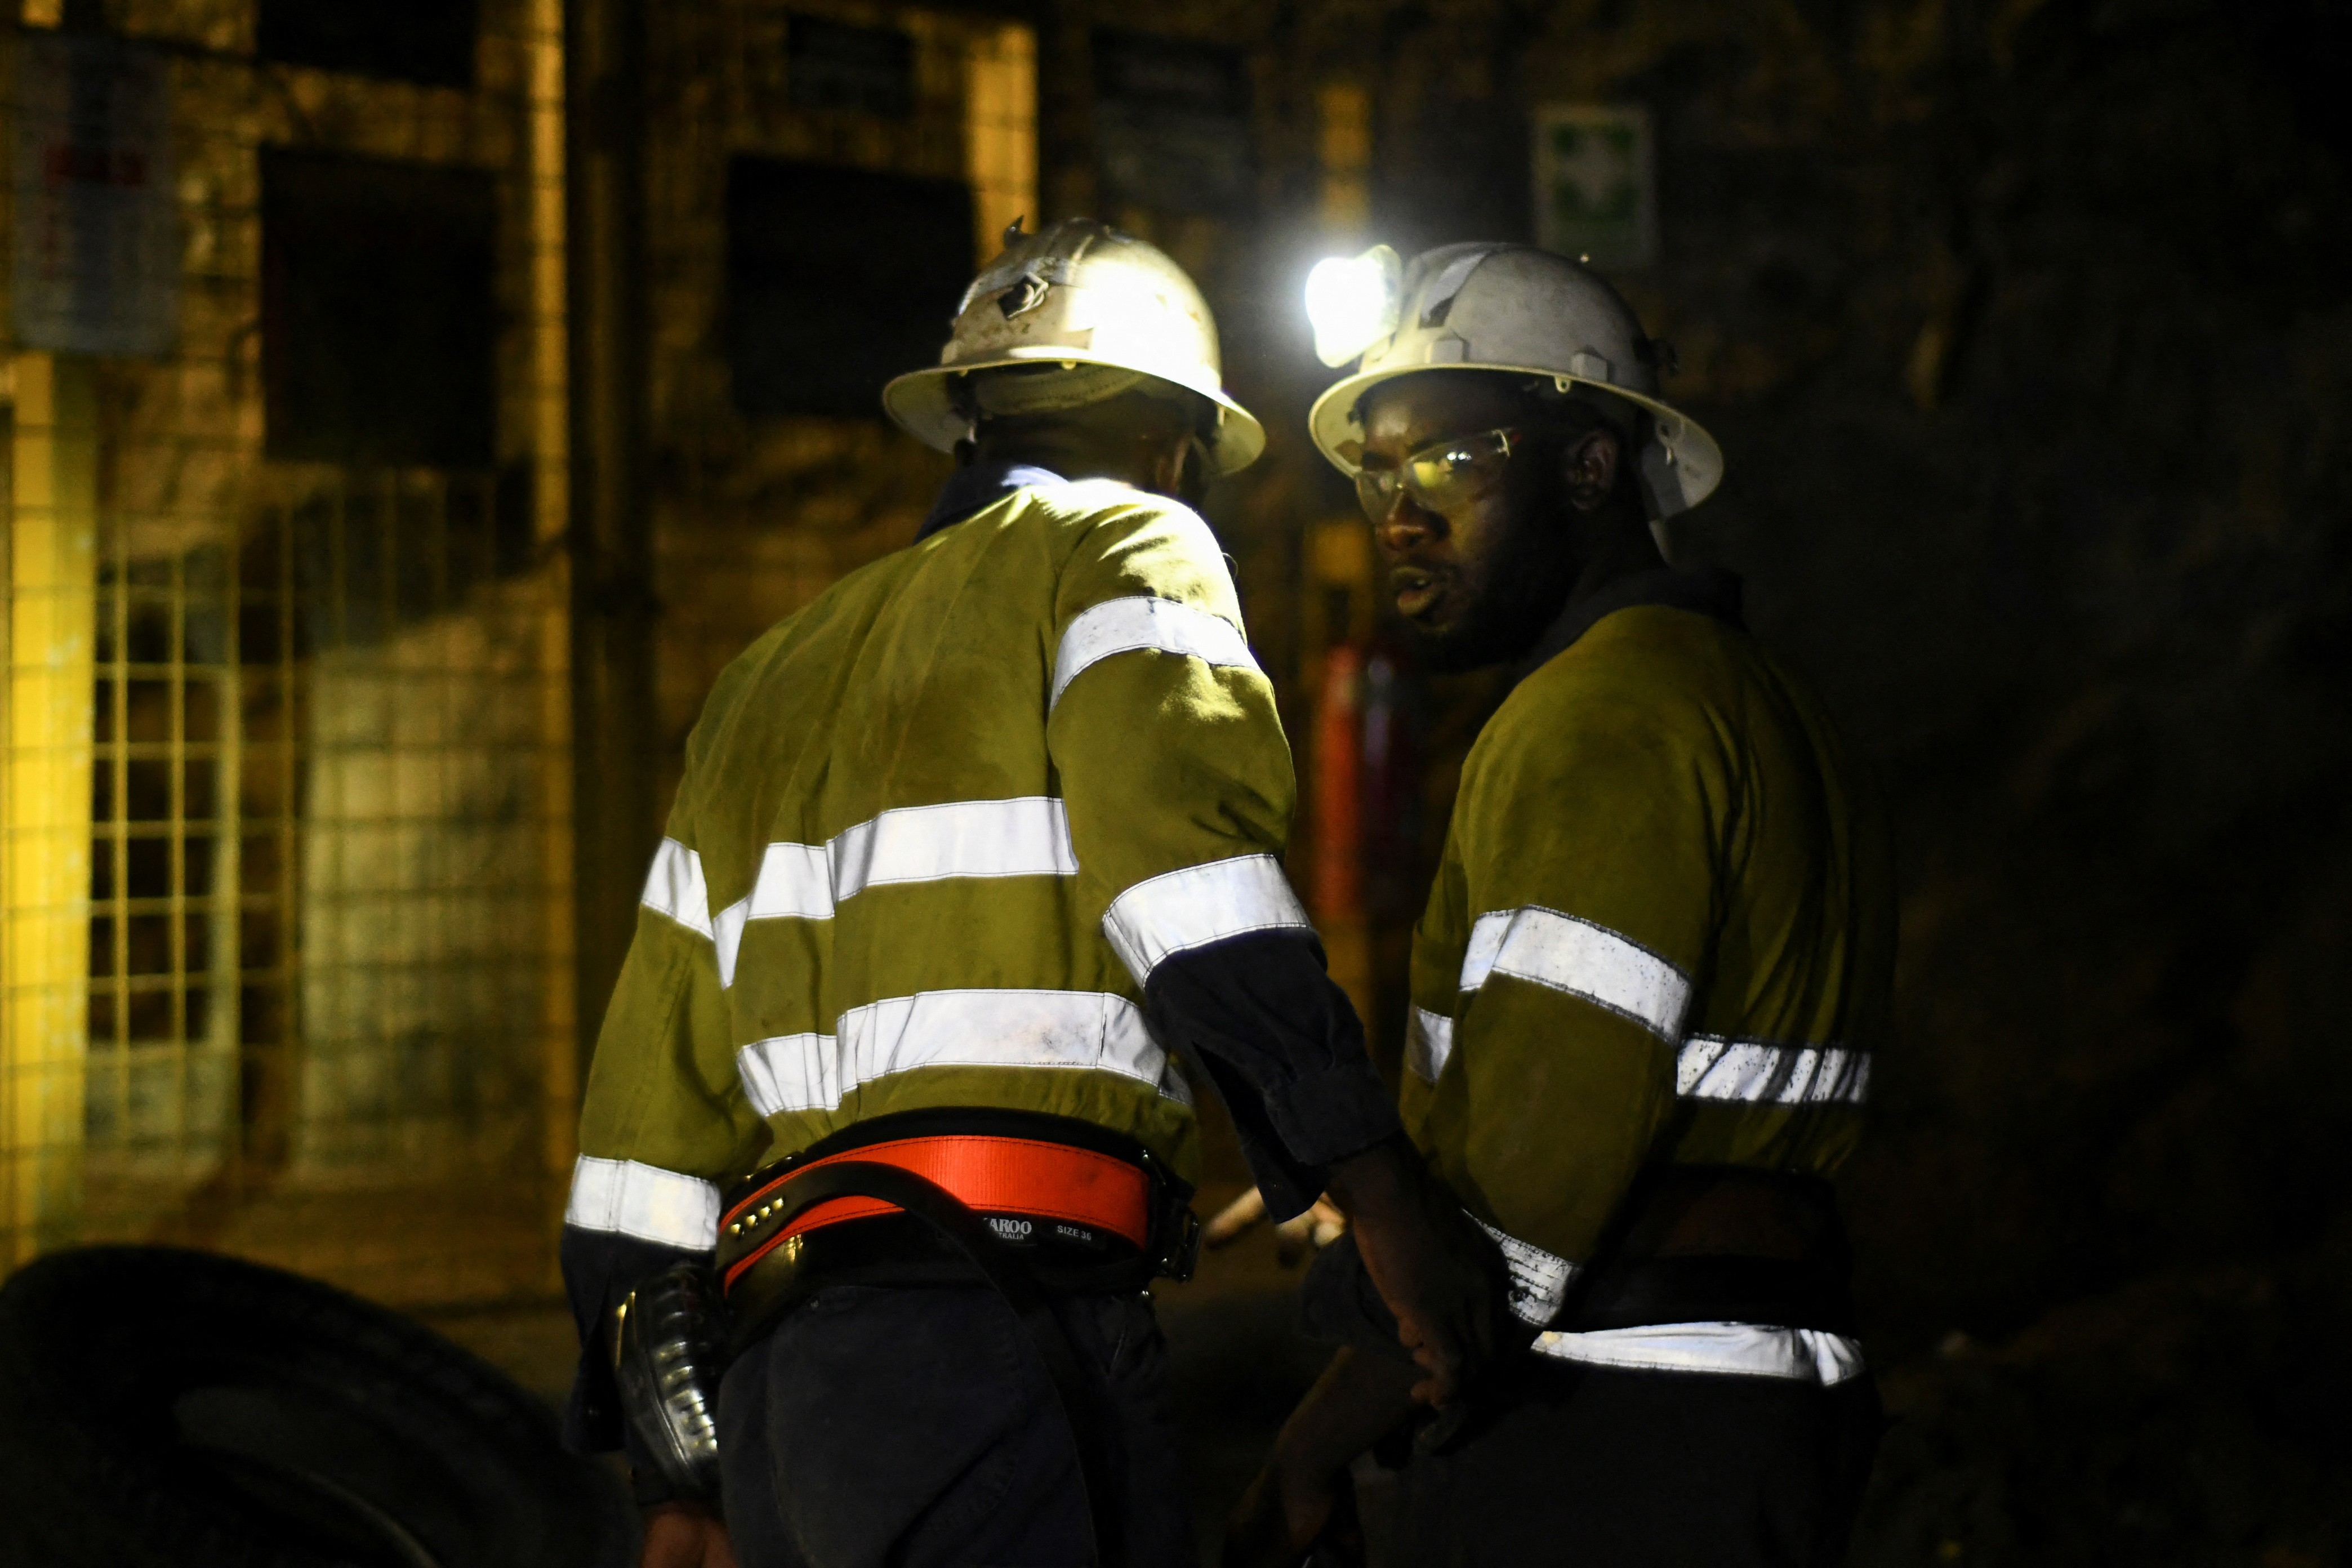 Oito trabalhadores estão presos há mais de 30 dias numa mina no Burkina Faso; esperança de resgatá-los vivos diminui a cada dia